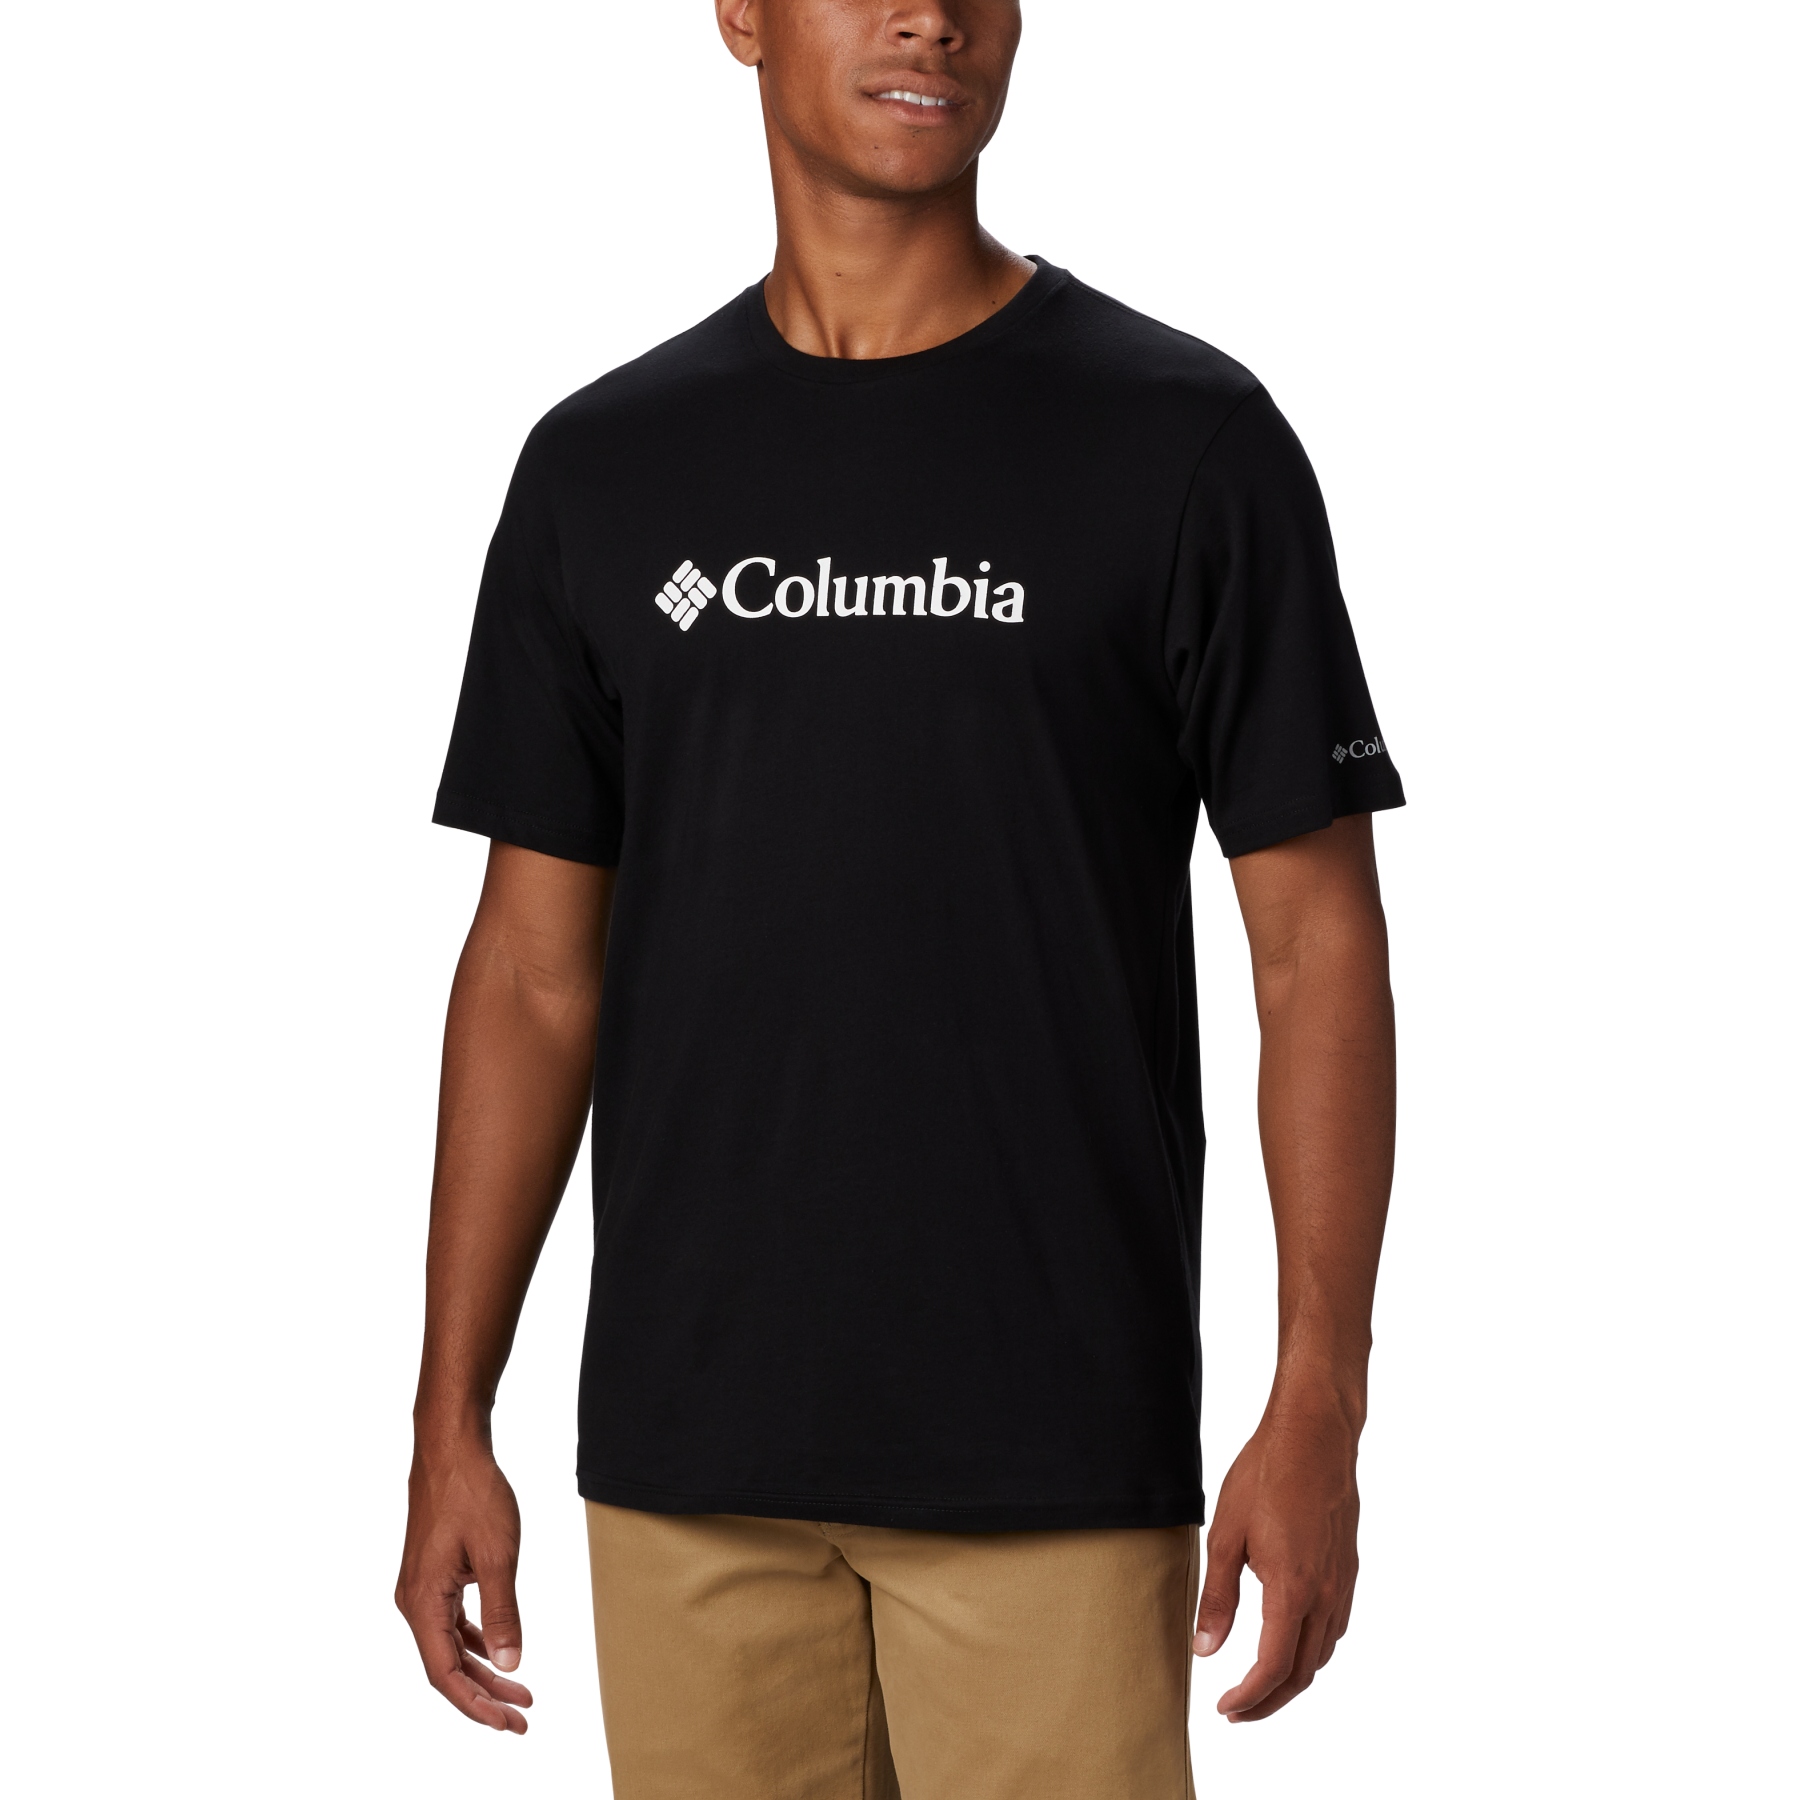 Produktbild von Columbia CSC Basic Logo T-Shirt Herren - Schwarz